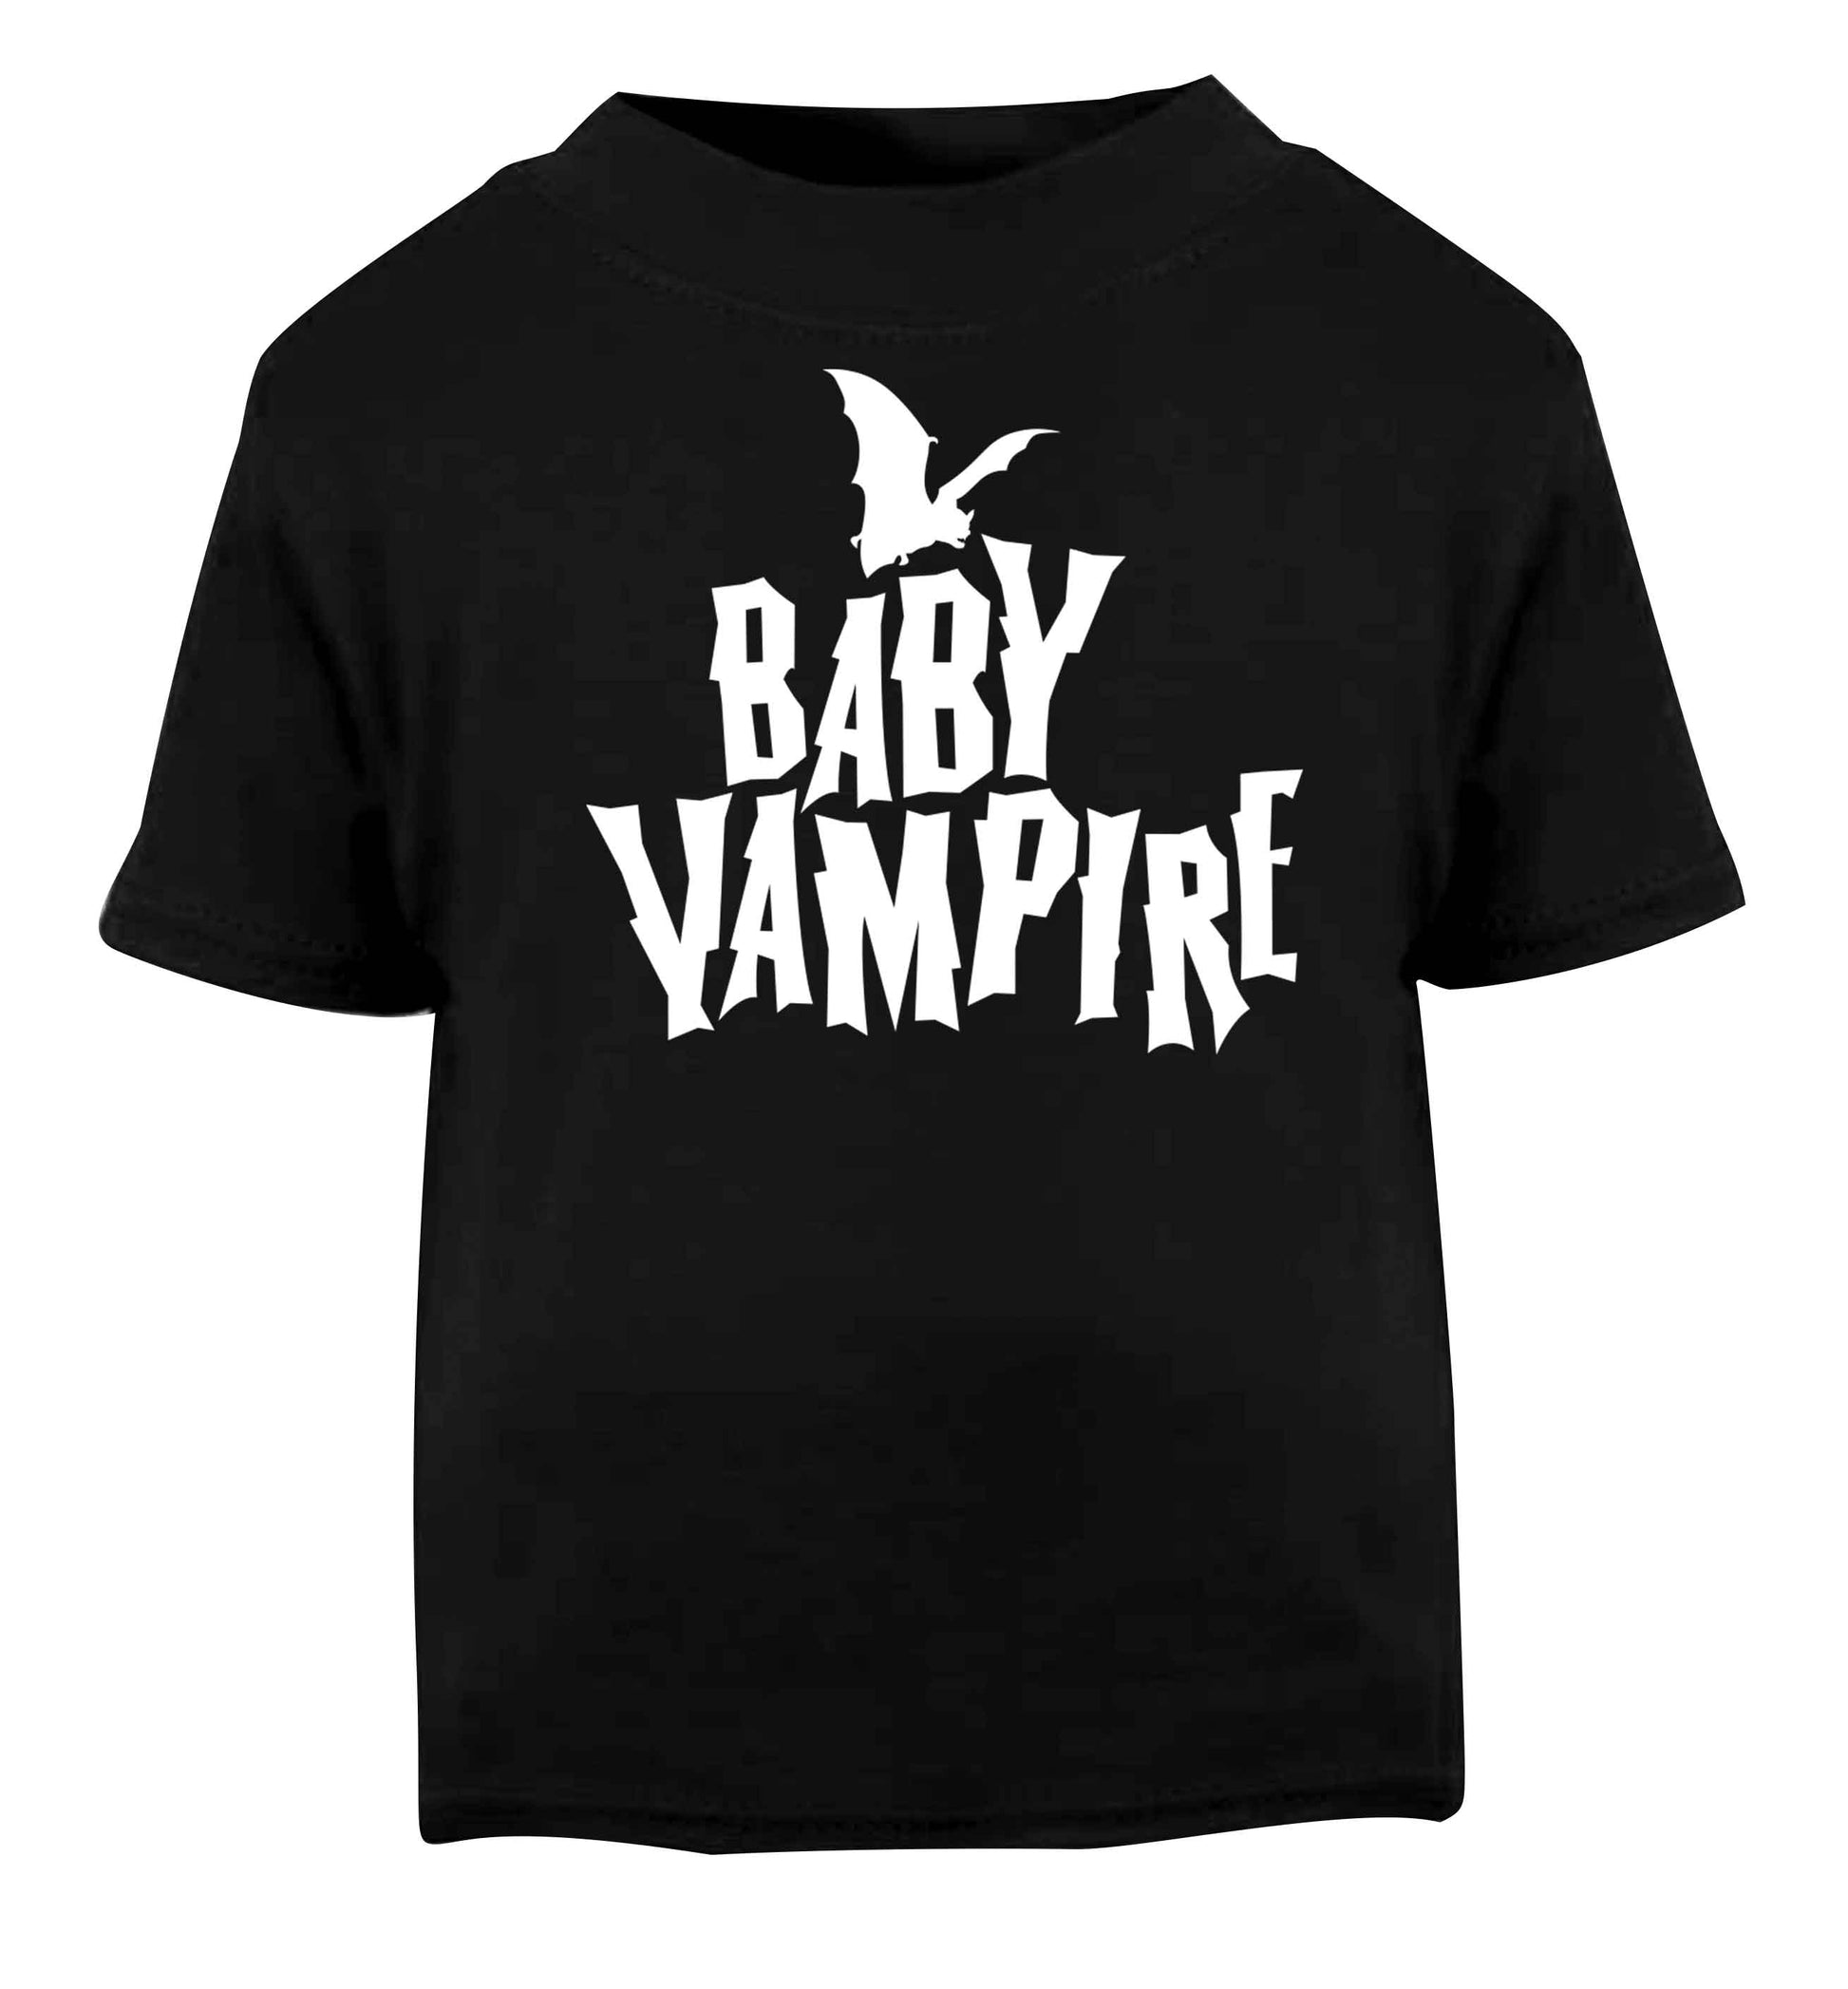 Baby vampire Black baby toddler Tshirt 2 years